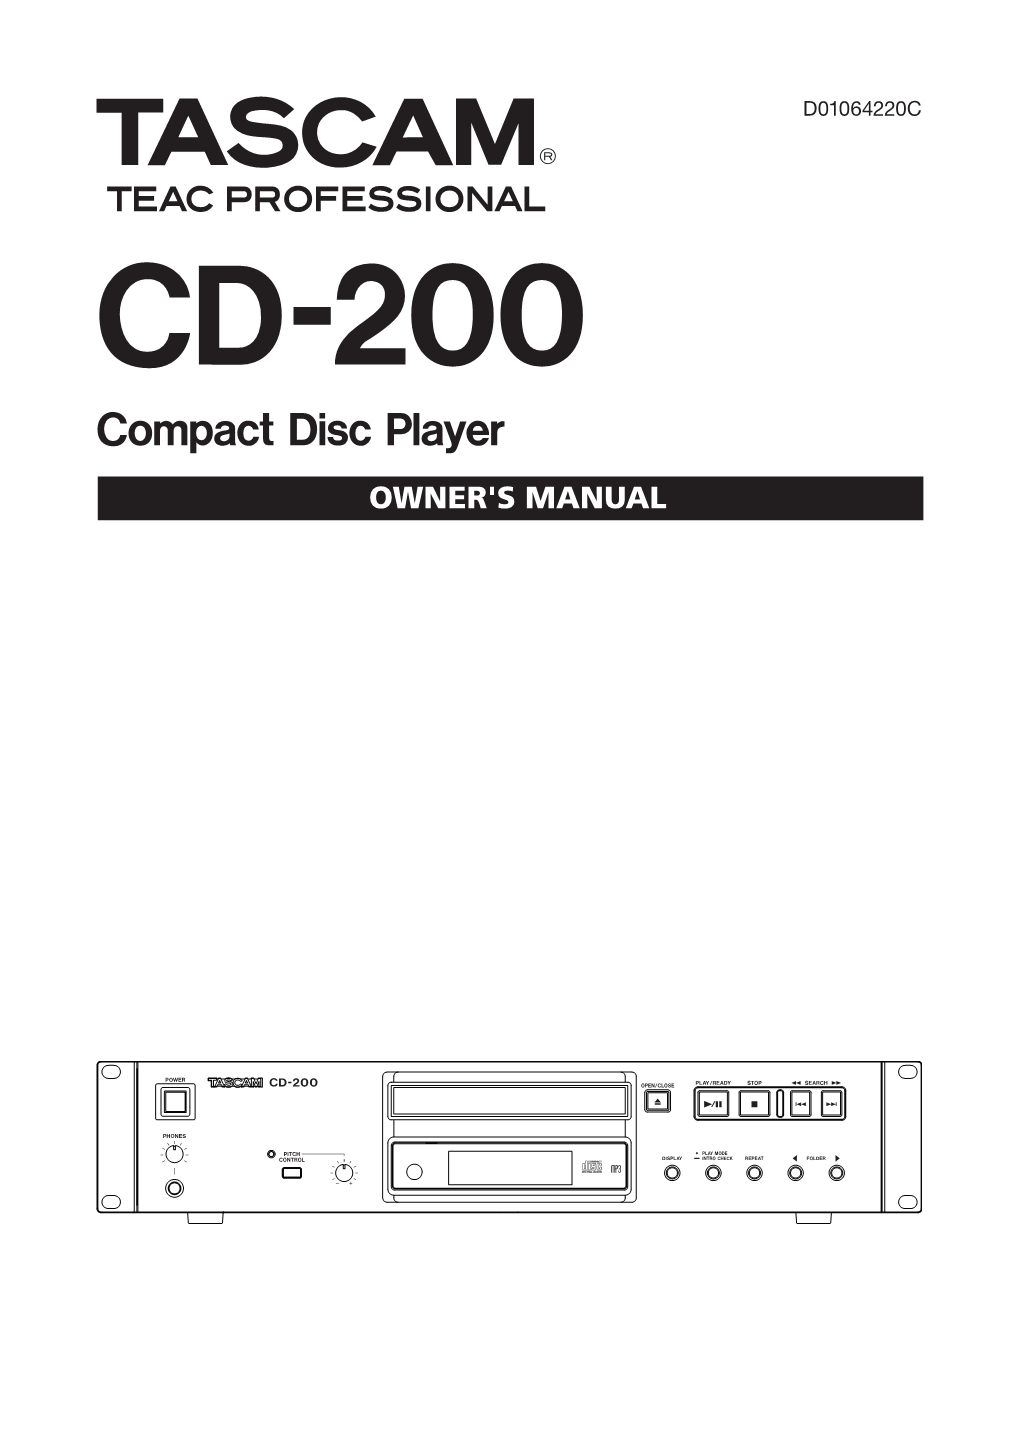 CD-200 Owner's Manual